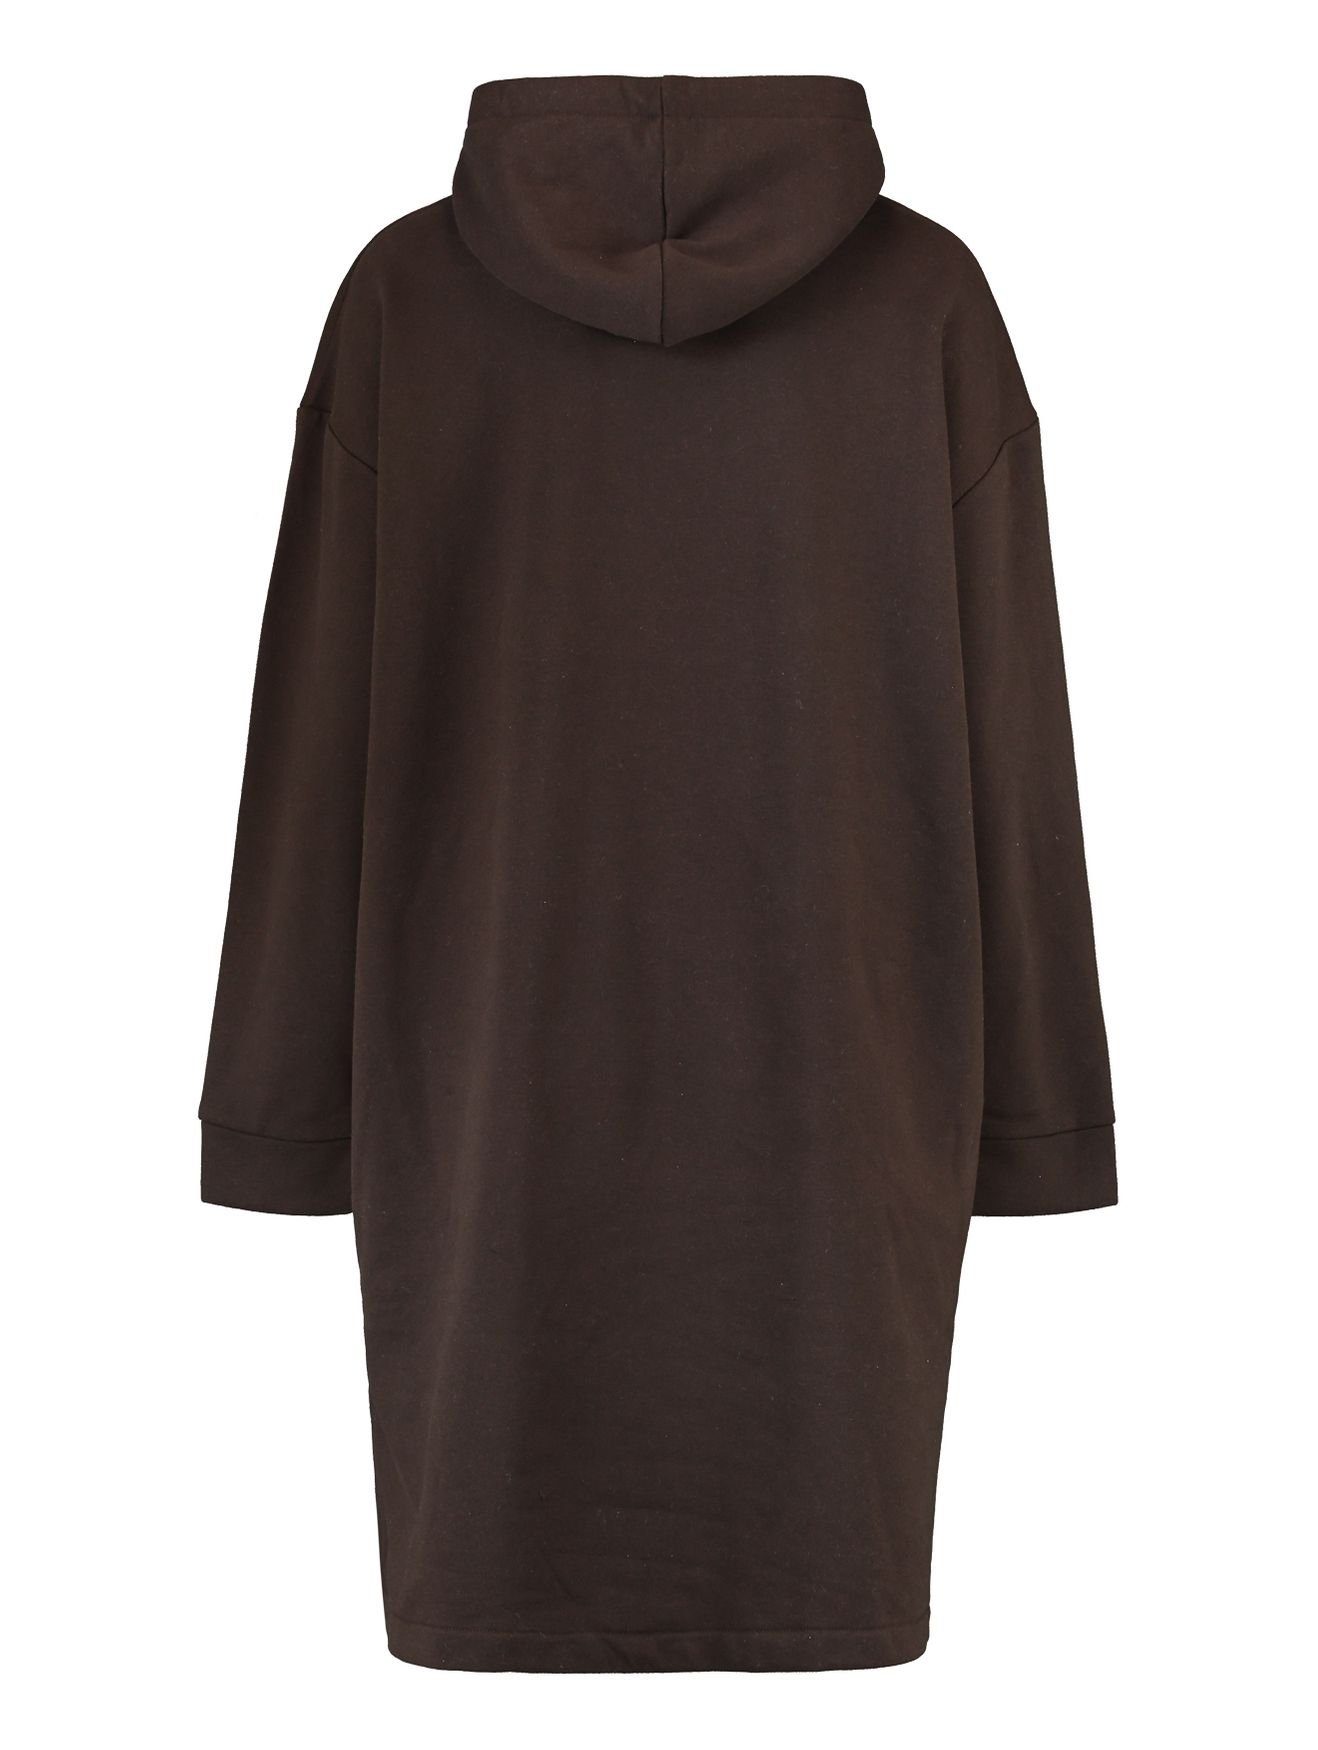 SWERA HaILY’S Kapuzen Sweat in Braun-2 Mini Pullover Kleid Knielang (lang) Hoodie Shirtkleid Dress 4705